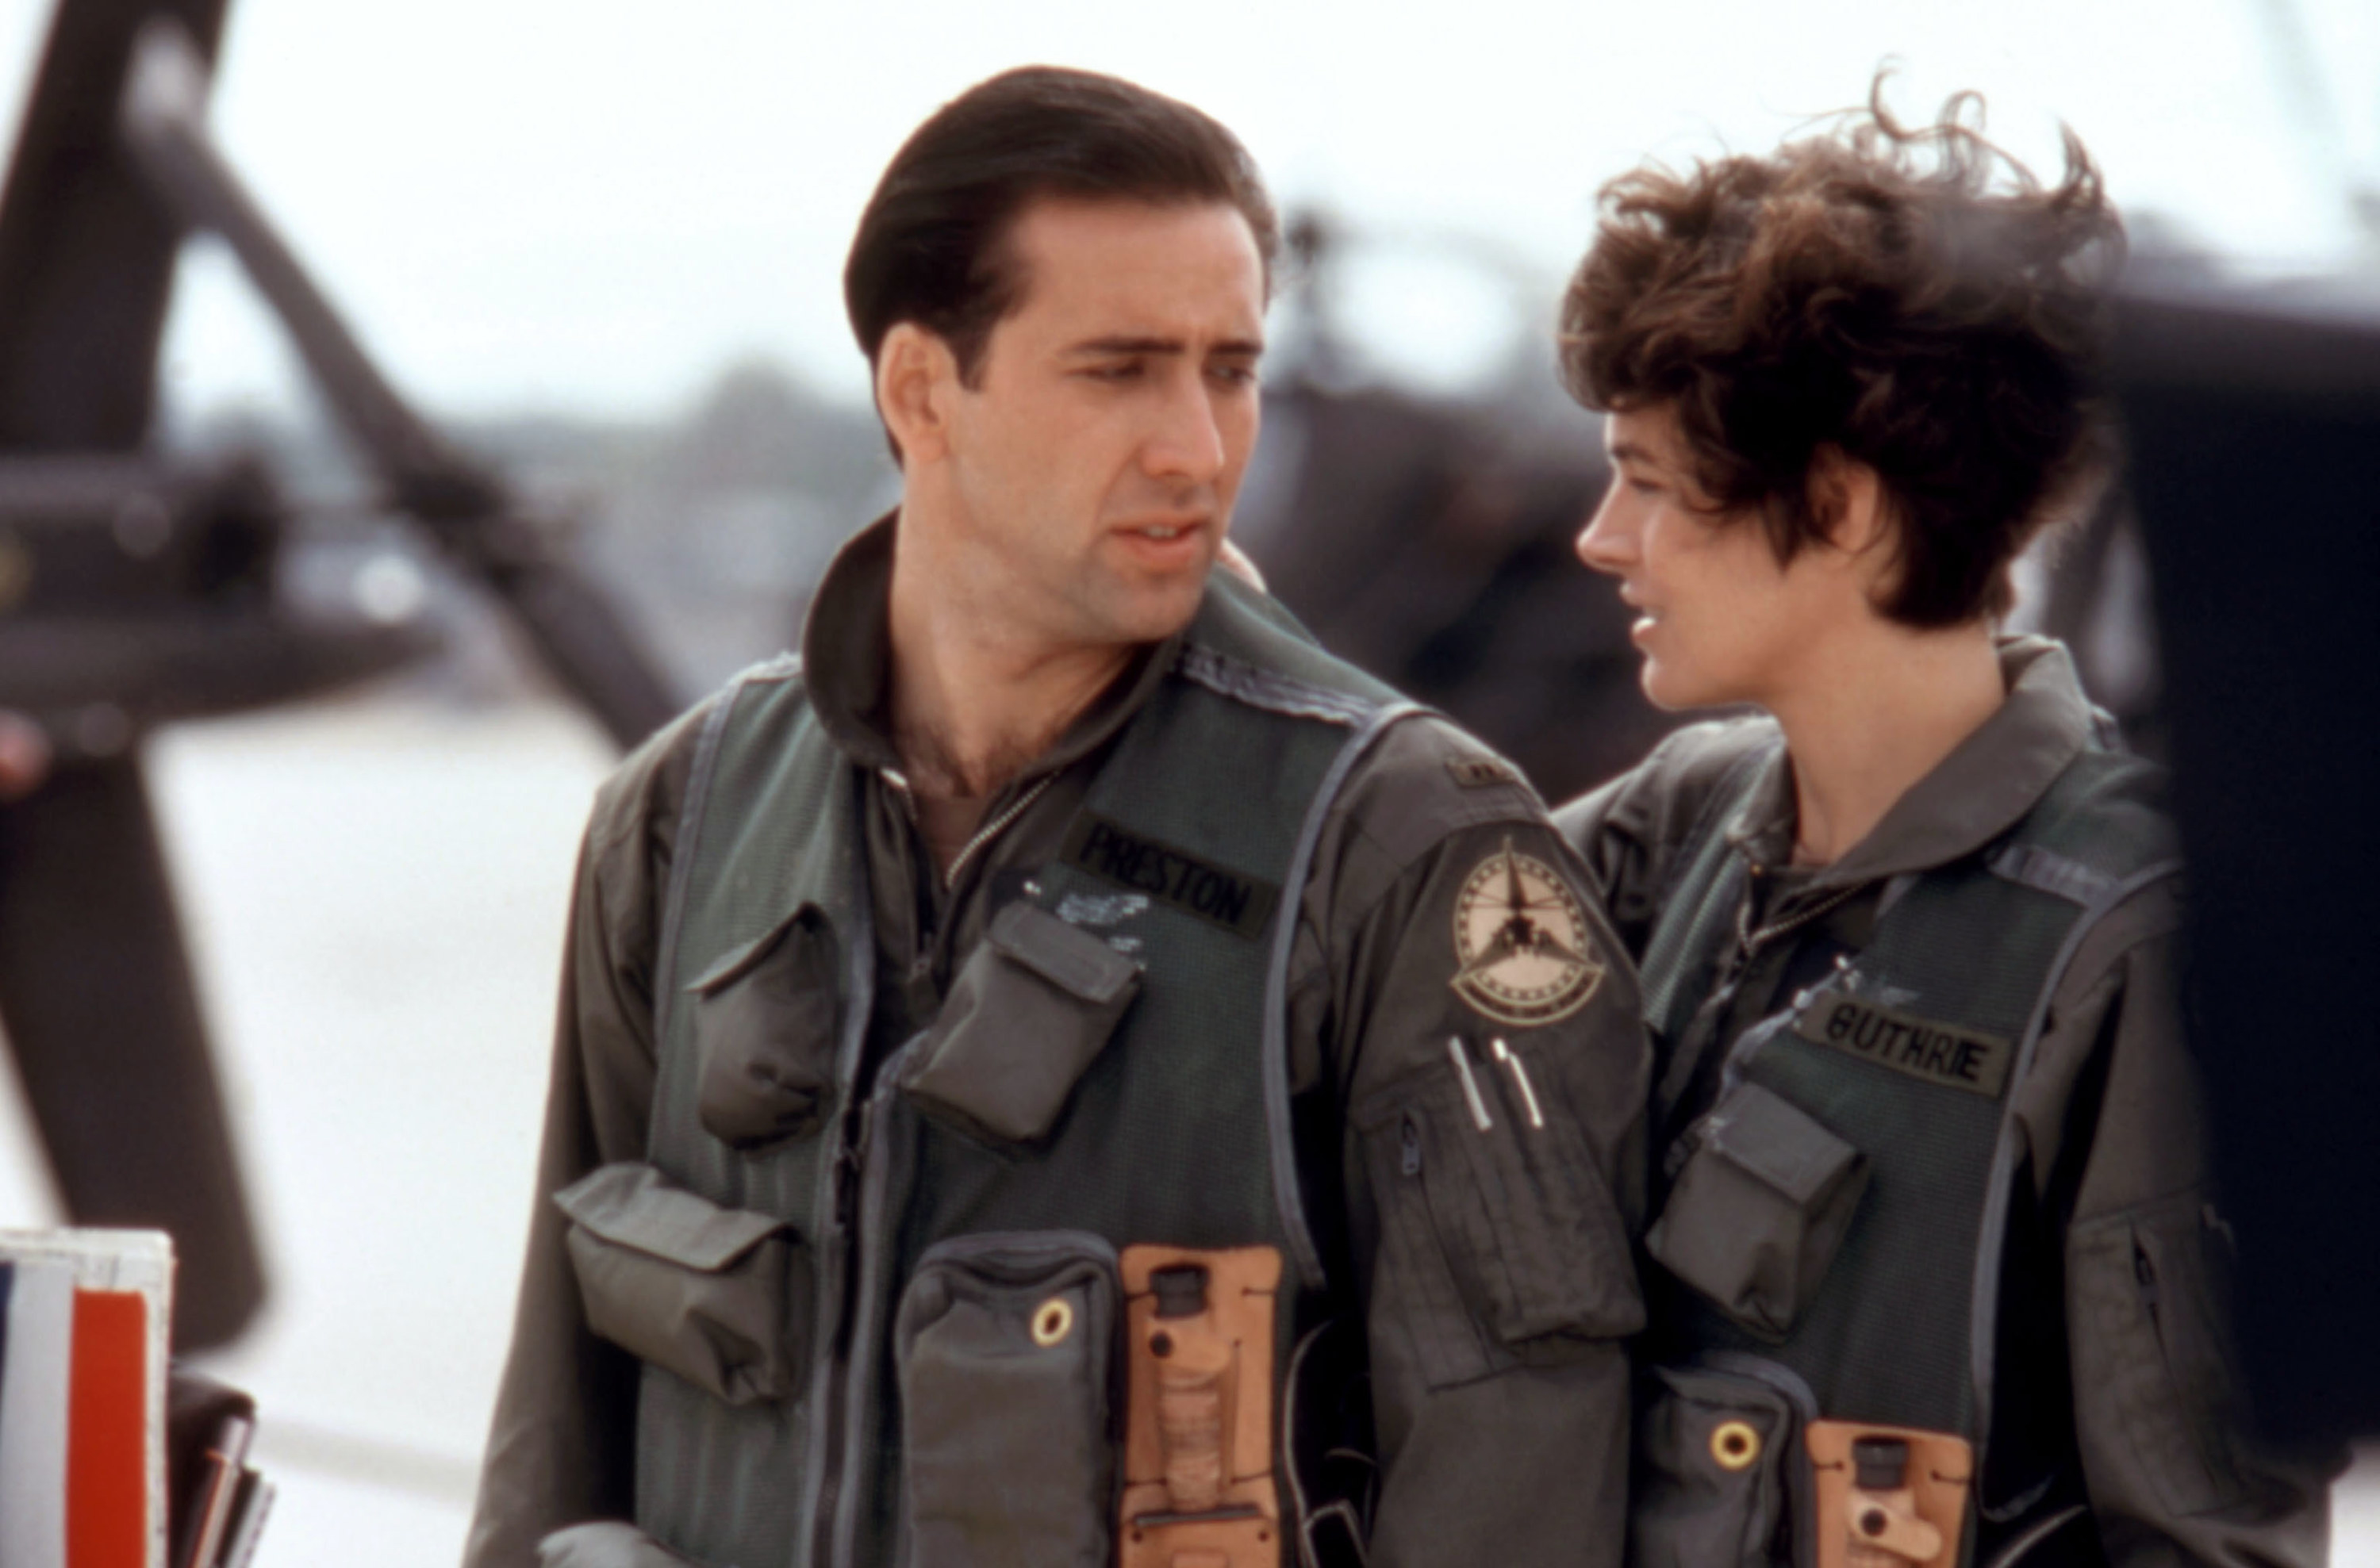 Nicolas Cage, Sean Young in pilot uniforms